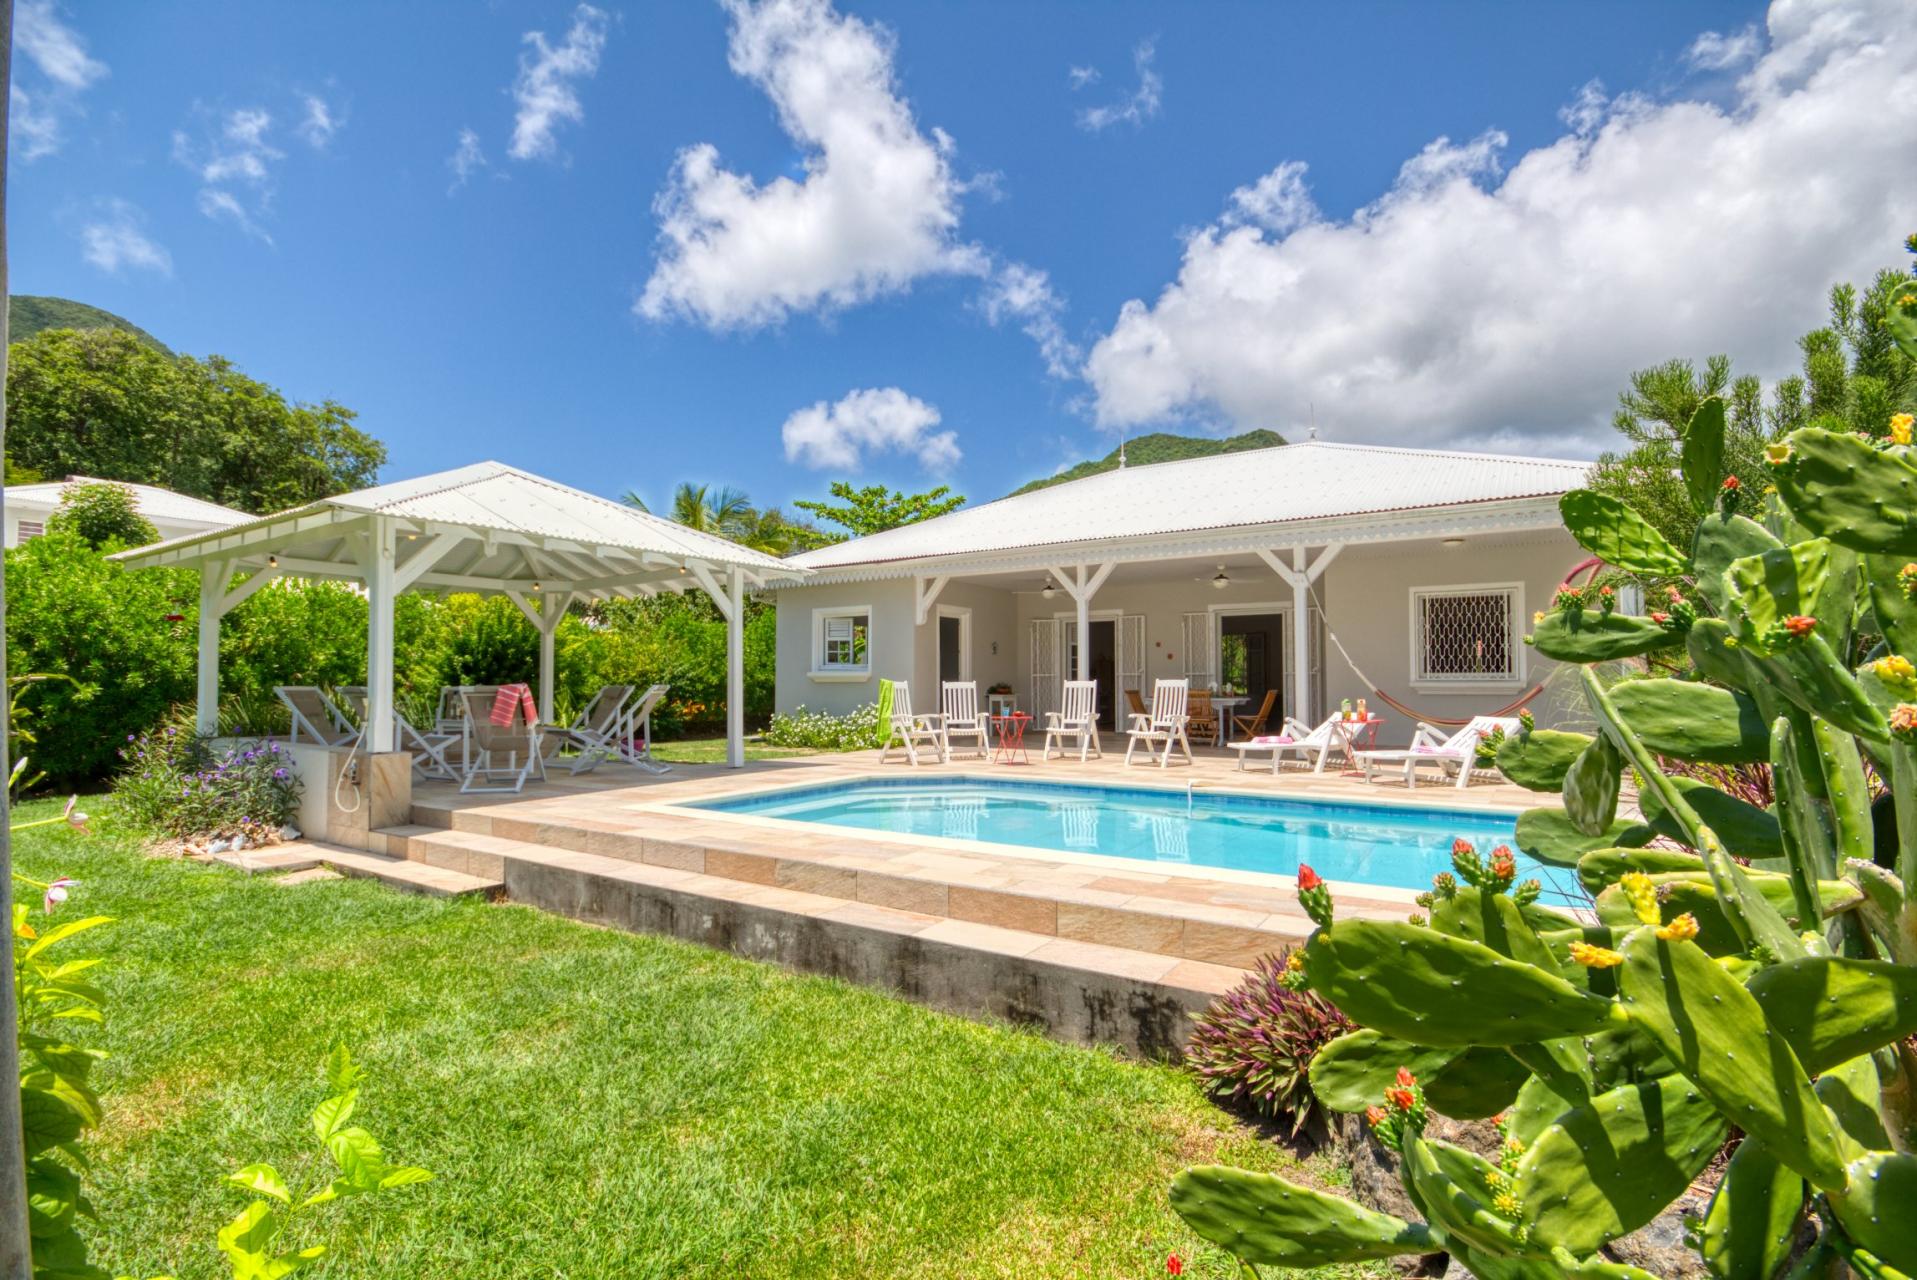 Location villa Le Diamant Martinique - Vue d'ensemble